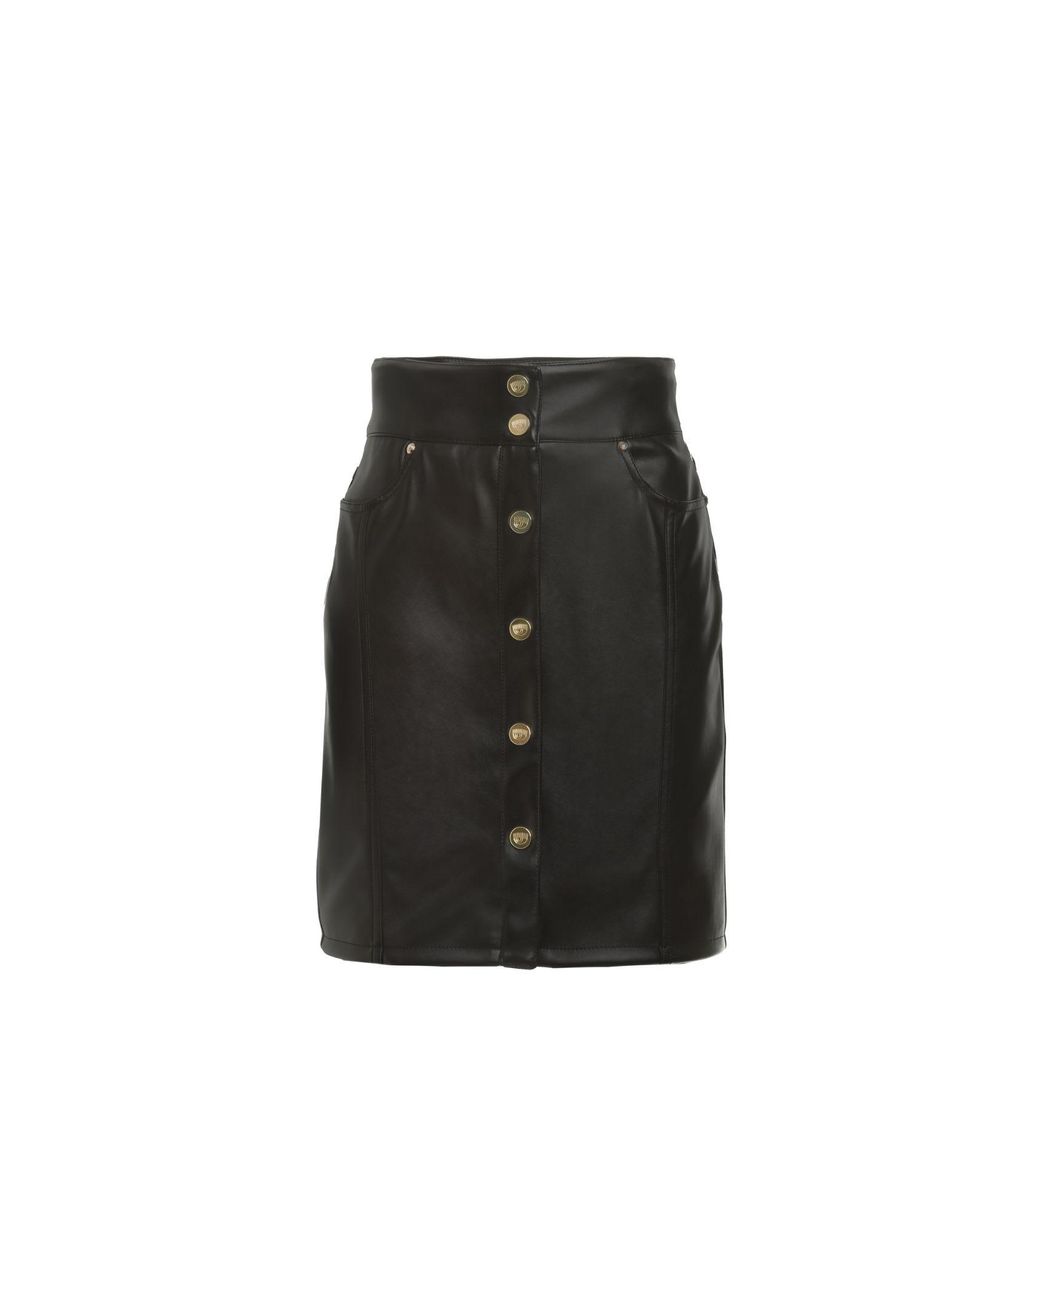 Chiara Ferragni Skirt in Black | Lyst